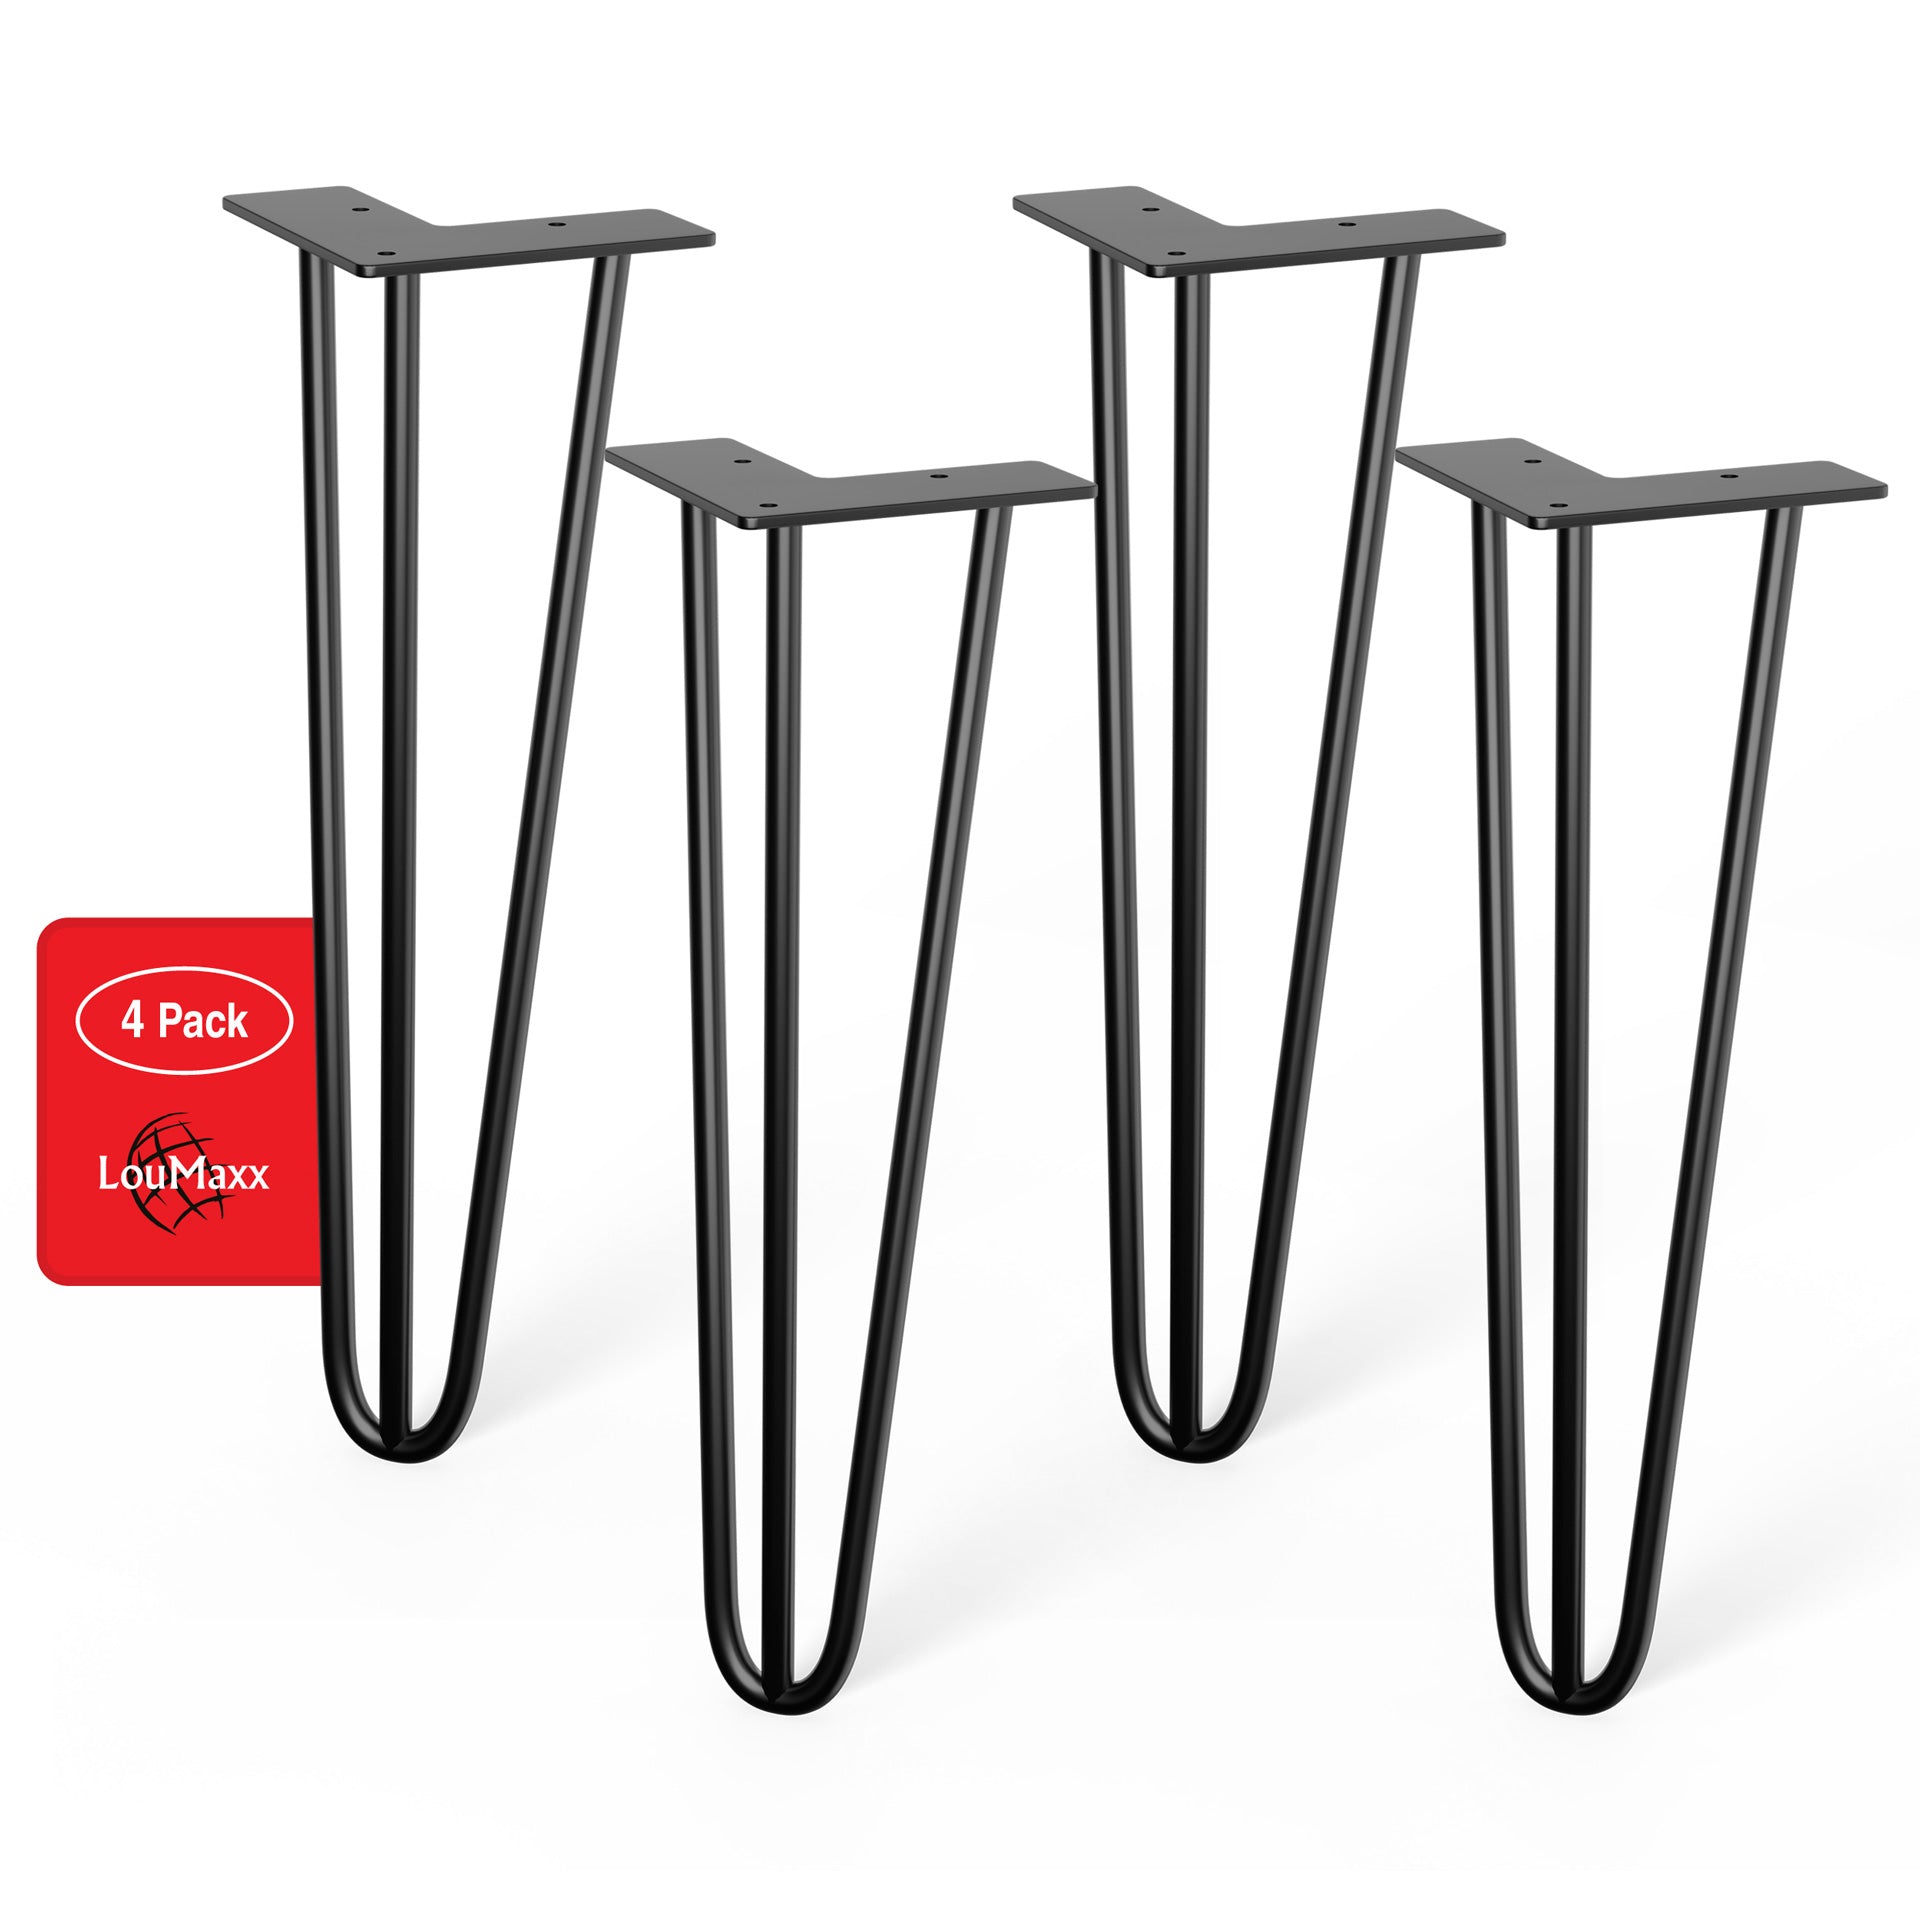 LouMaxx Tischbeine Metall Schwarz – 4 Stück – 406mm Höhe - 10mm Rundstahl, Hochwertiges 3-Stangen Tischbein für jeden Einsatzzweck inkl. Schrauben und Bodenschoner